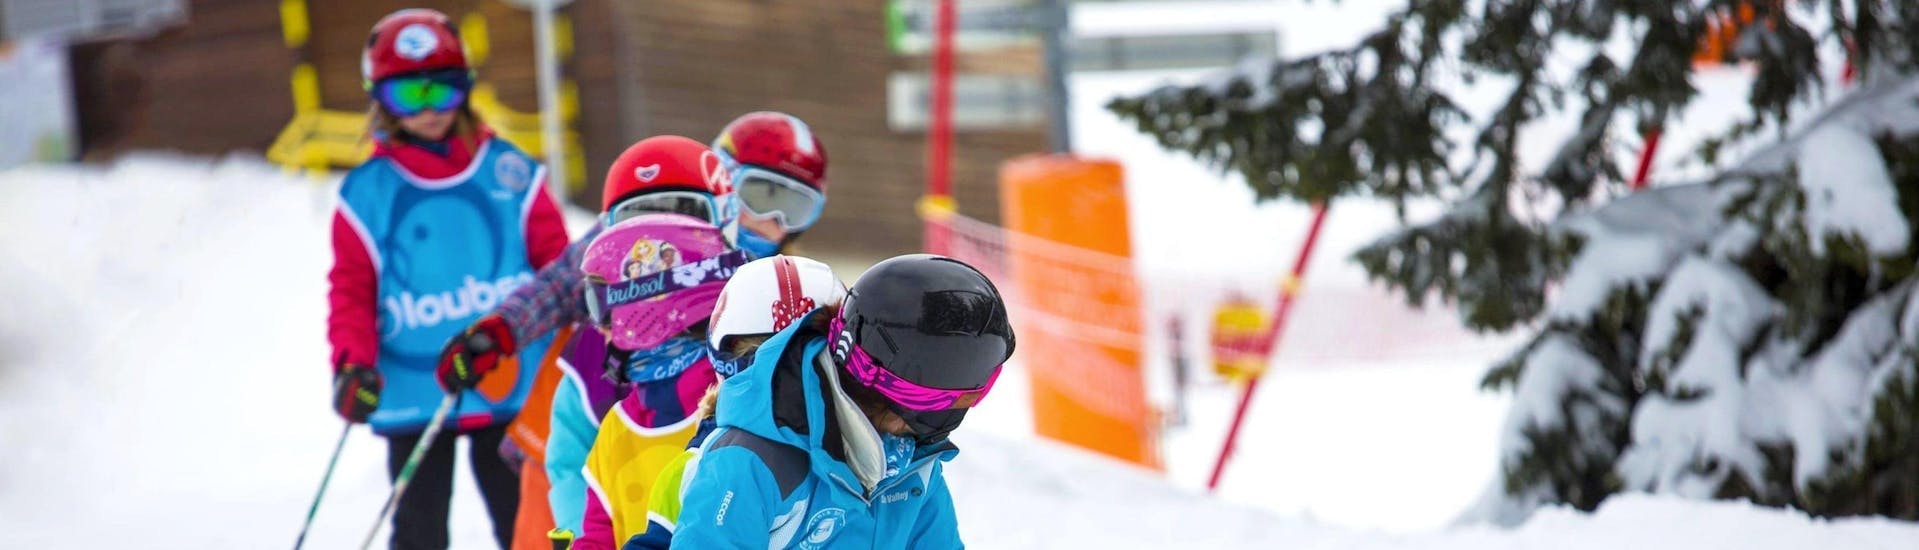 Clases de esquí para niños a partir de 7 años para debutantes.